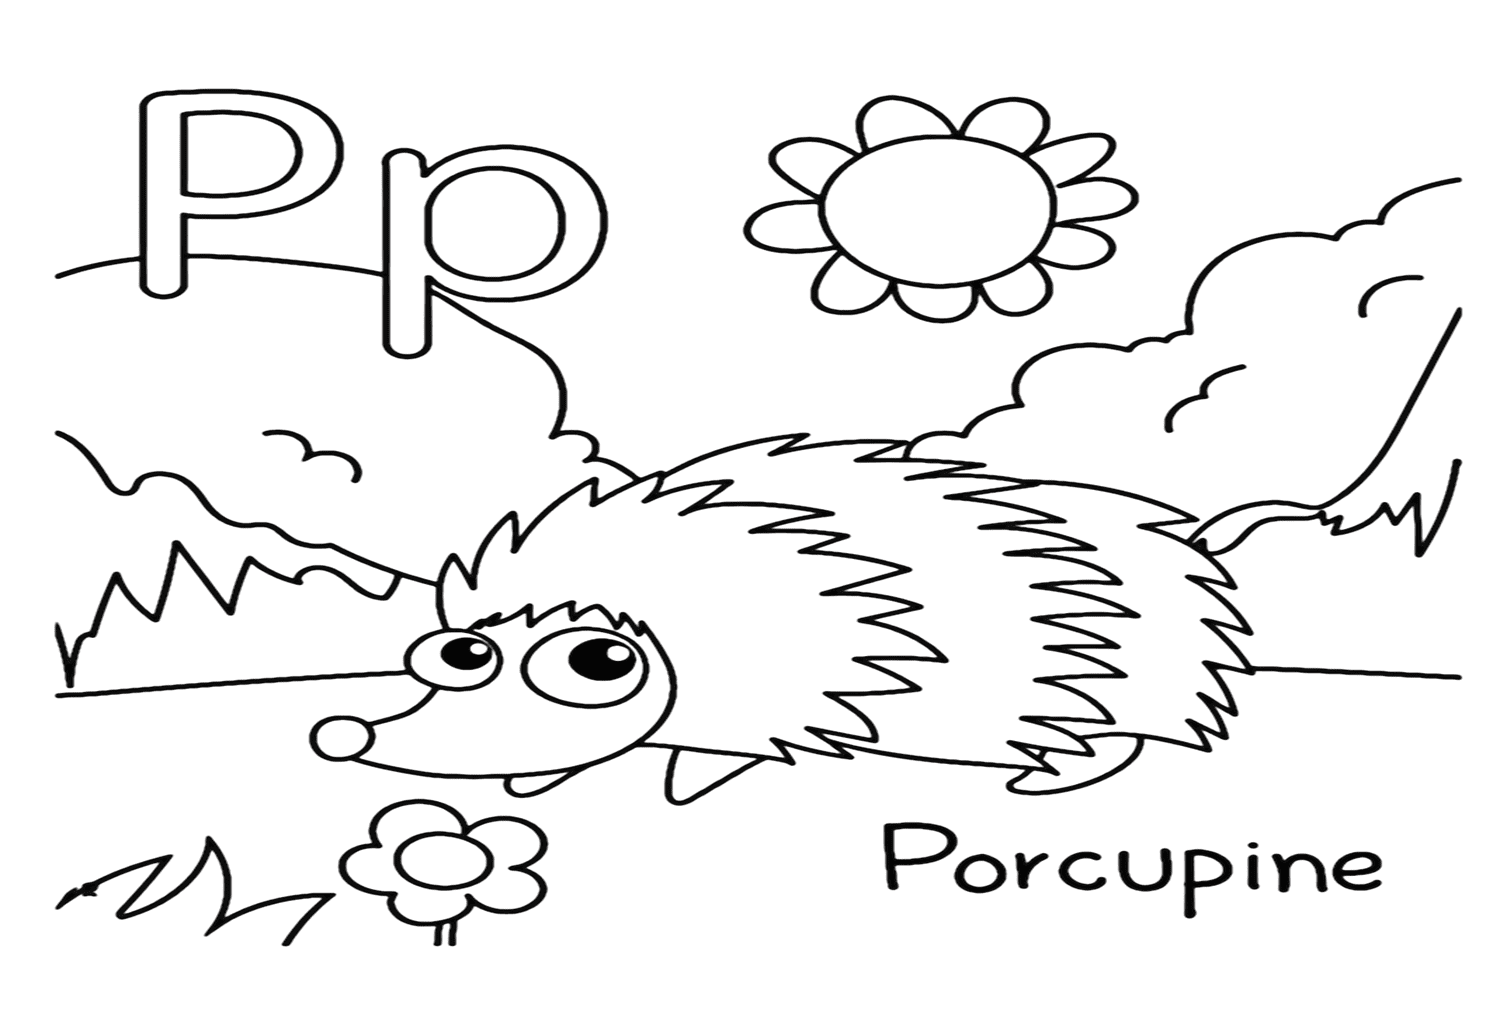 Coloriage de la lettre P pour le porc-épic de Porcupine